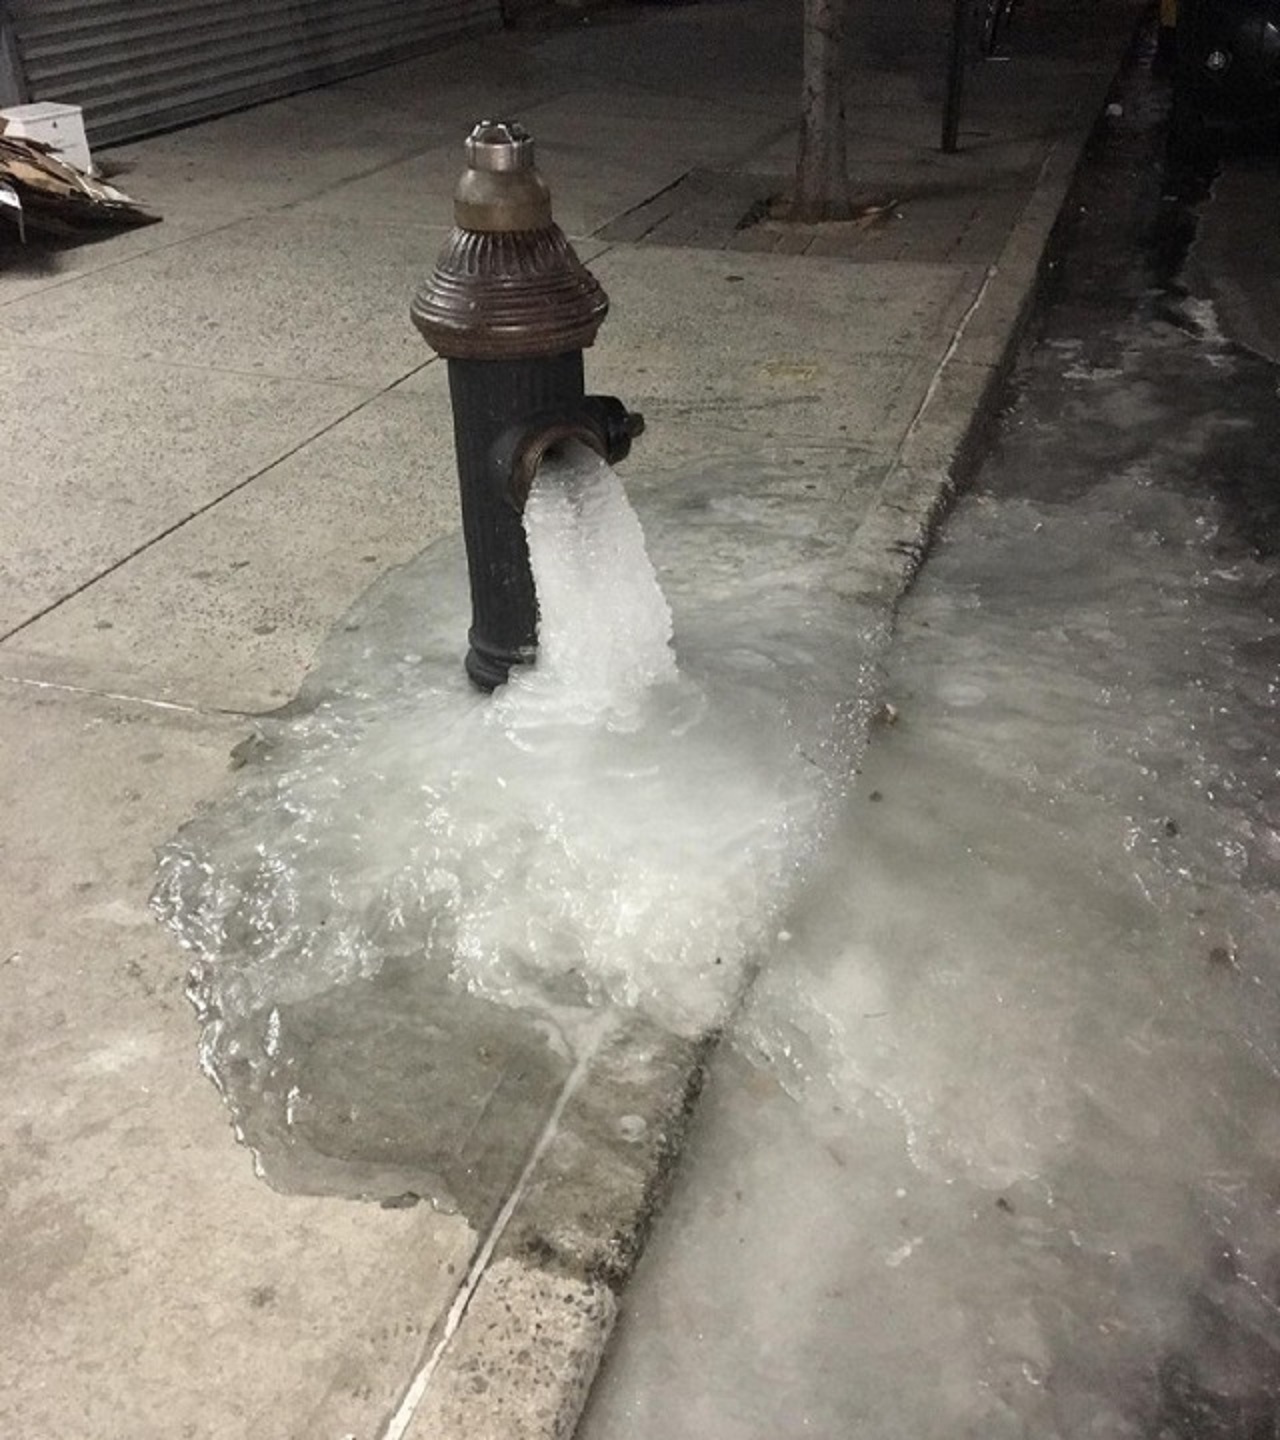 acqua ghiacciata fuoriuscita dall'idrante